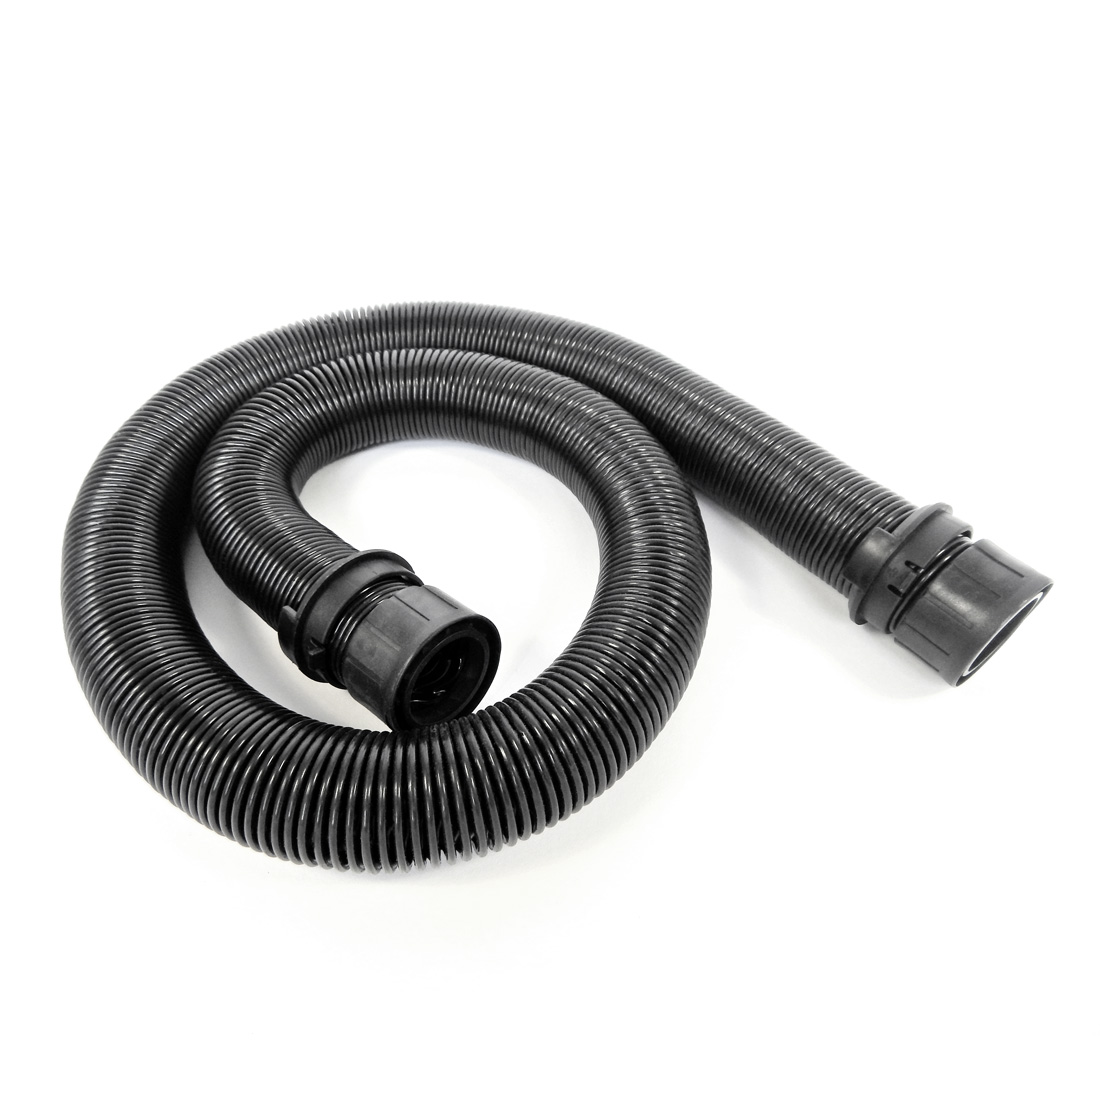 Adjustable vacuum hose